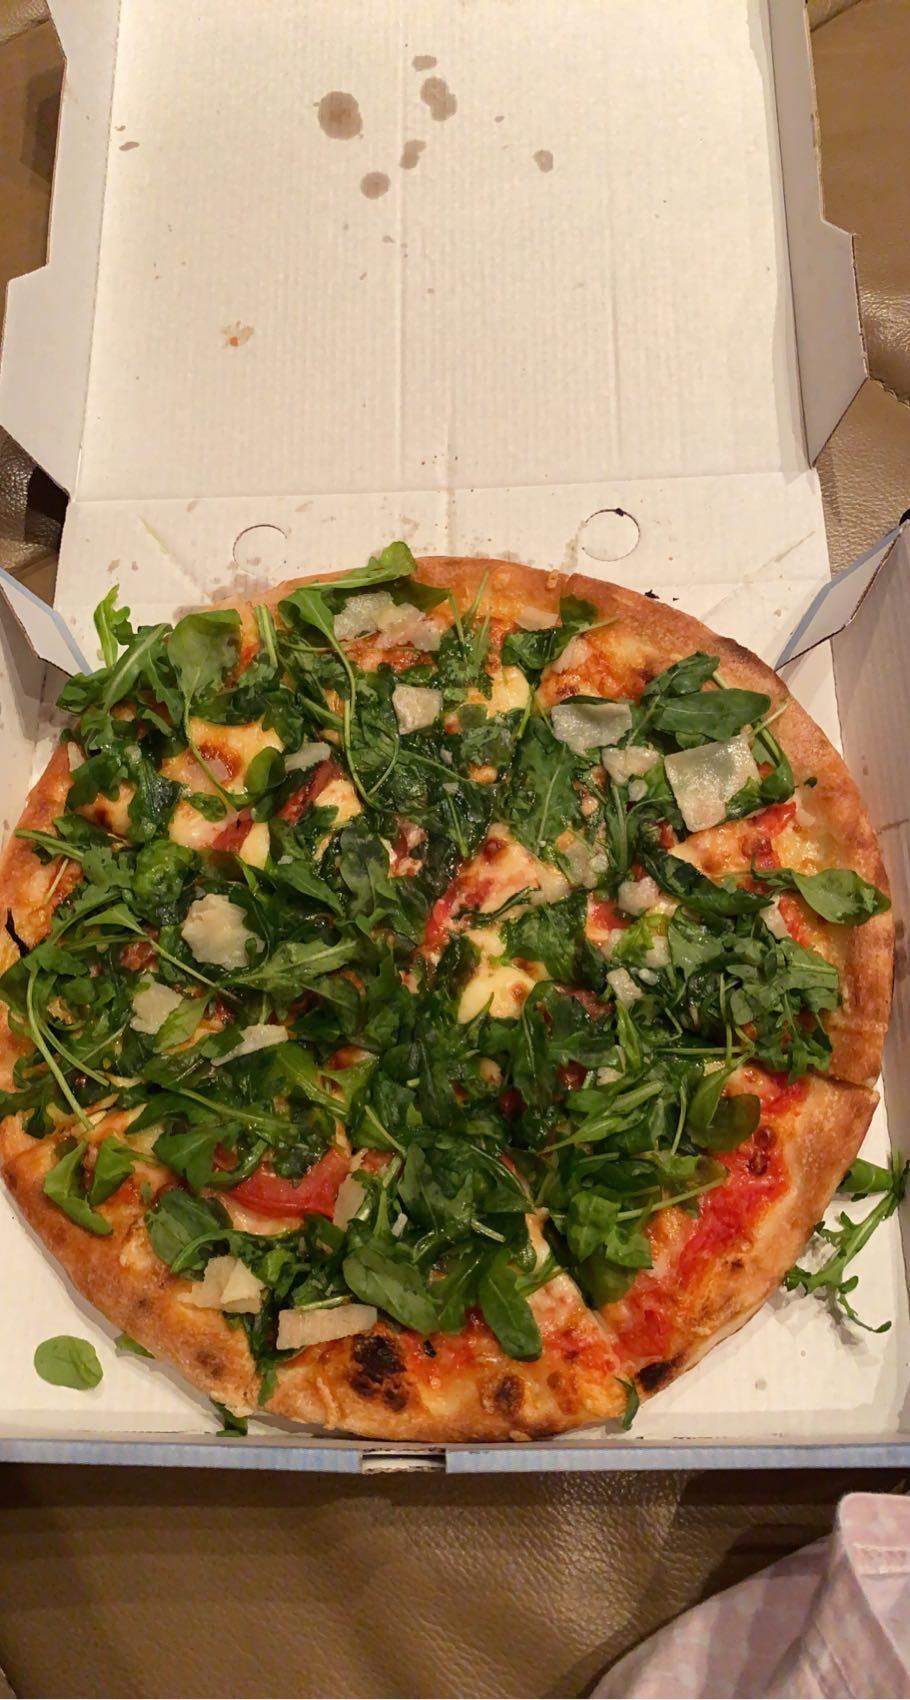 Wie viele Kalorien hat diese Pizza? (Gesundheit und Medizin, Ernährung